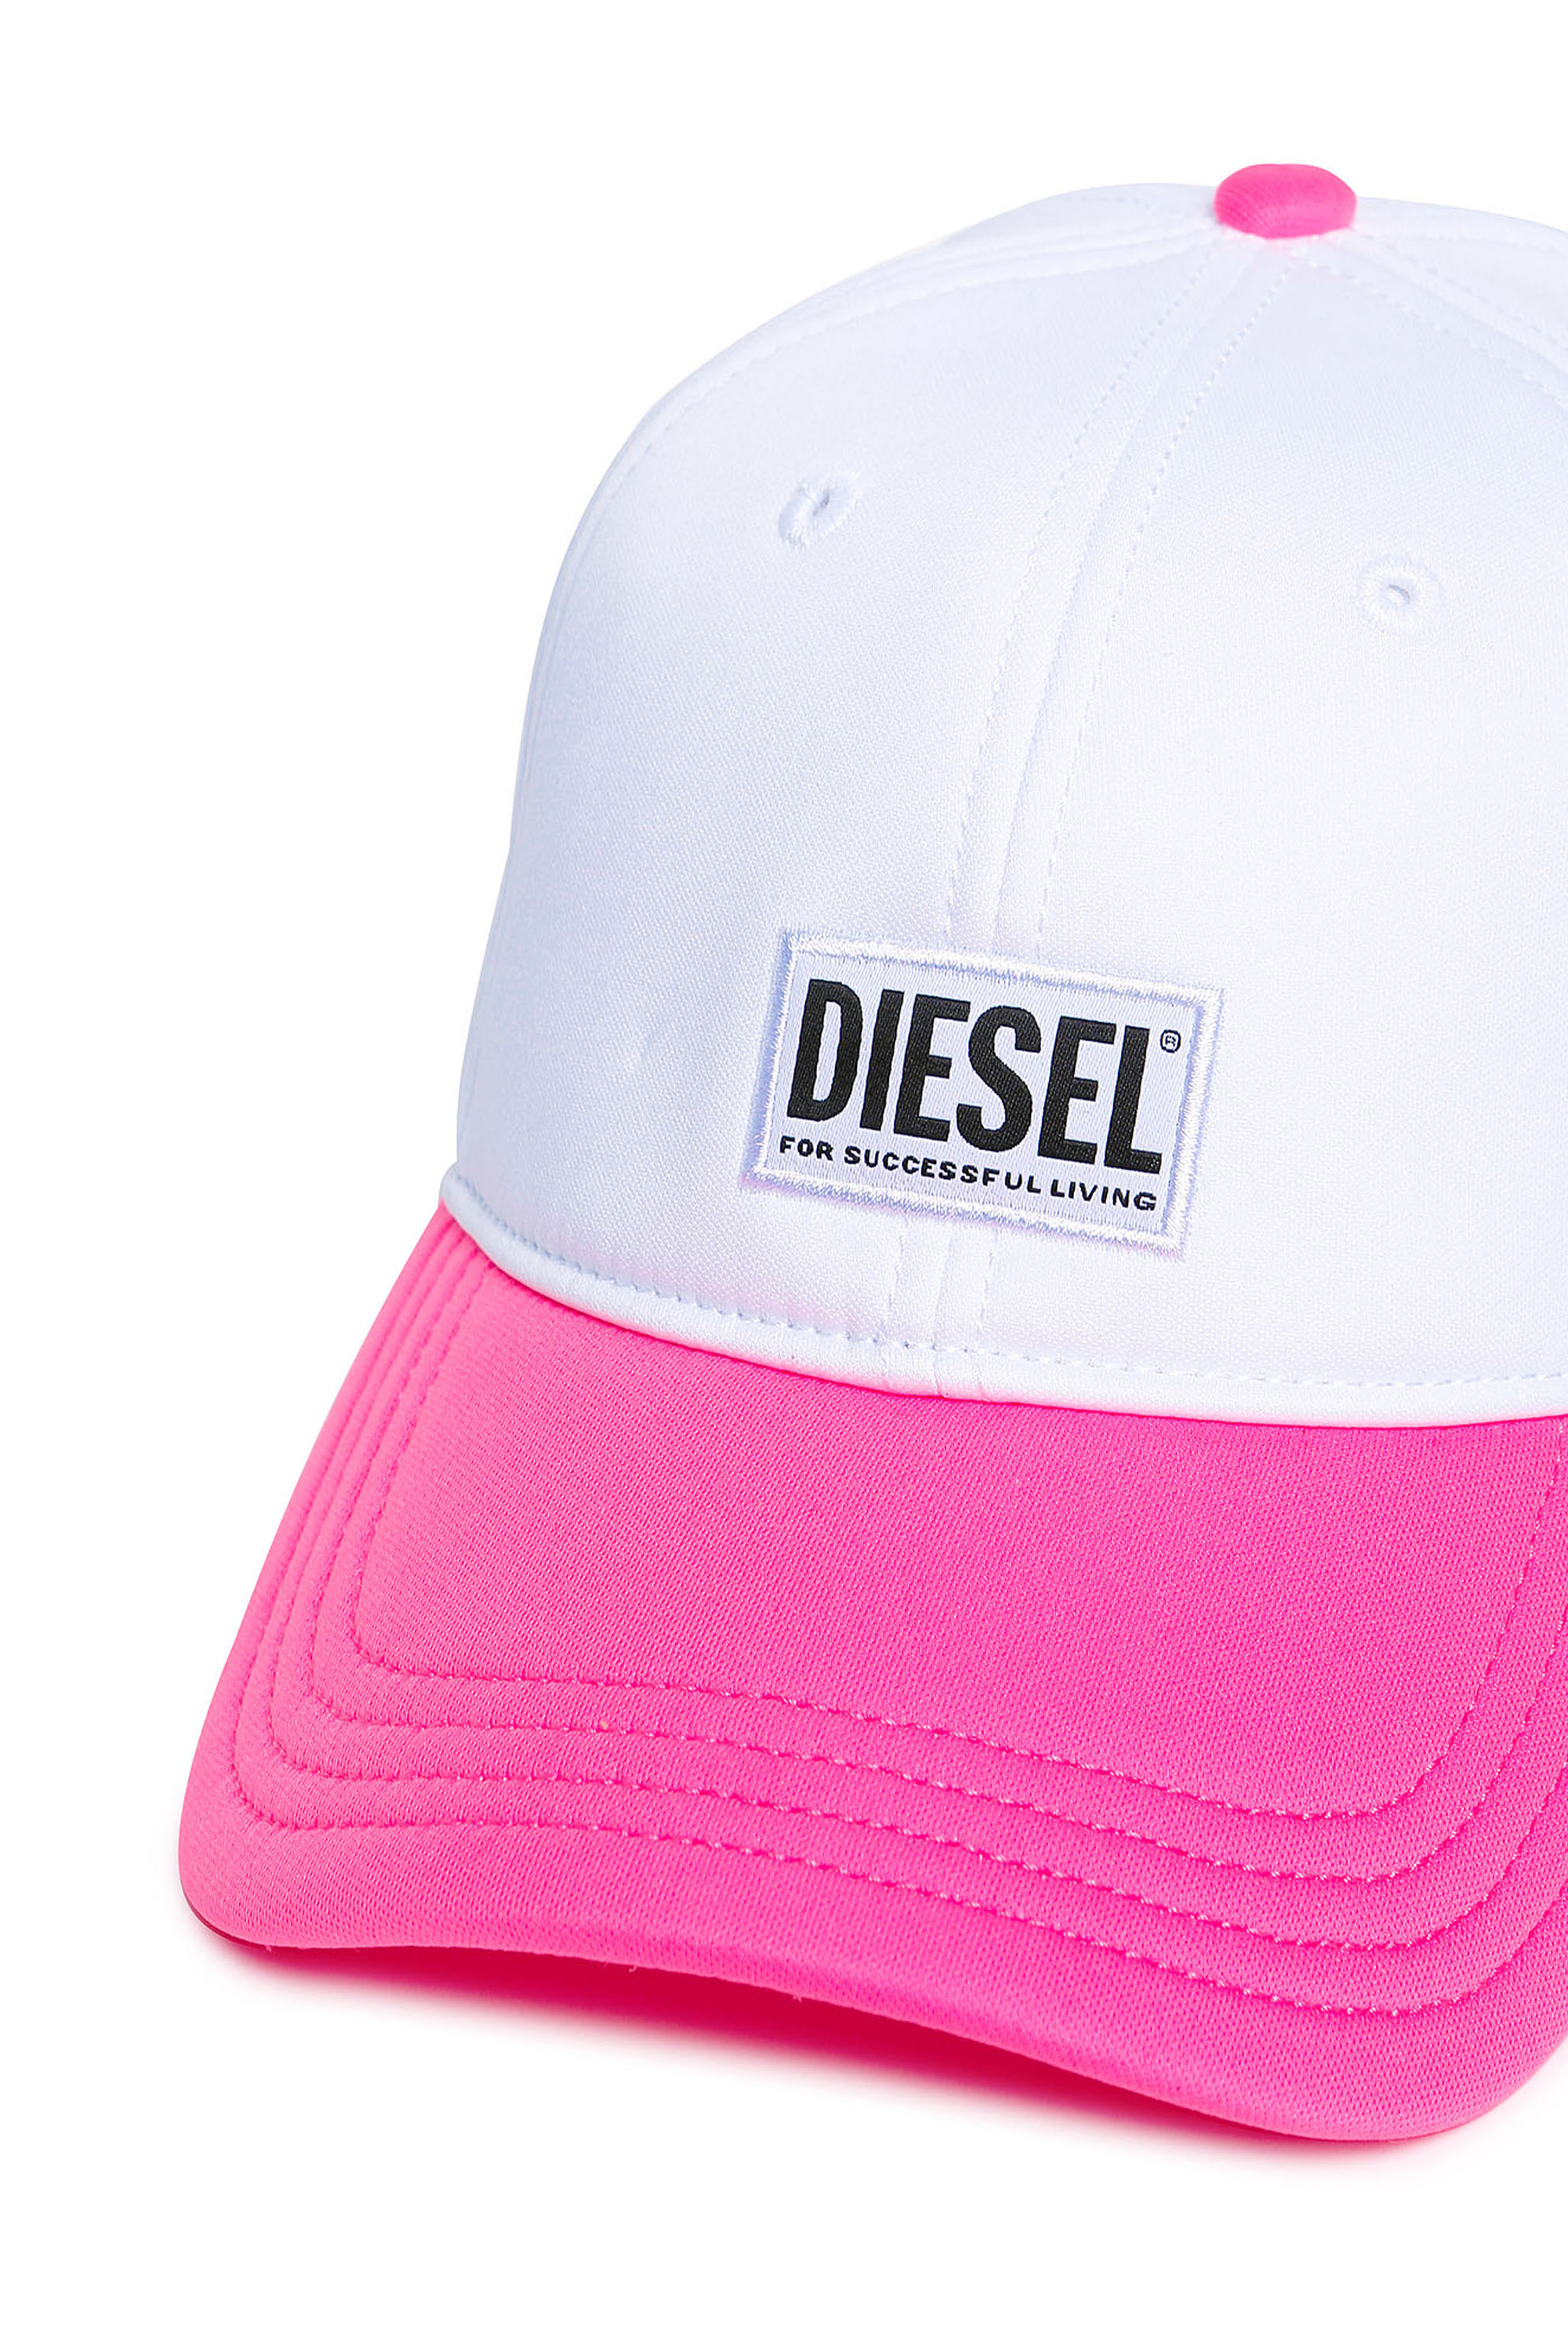 Diesel - FDURBO, White/Pink - Image 3